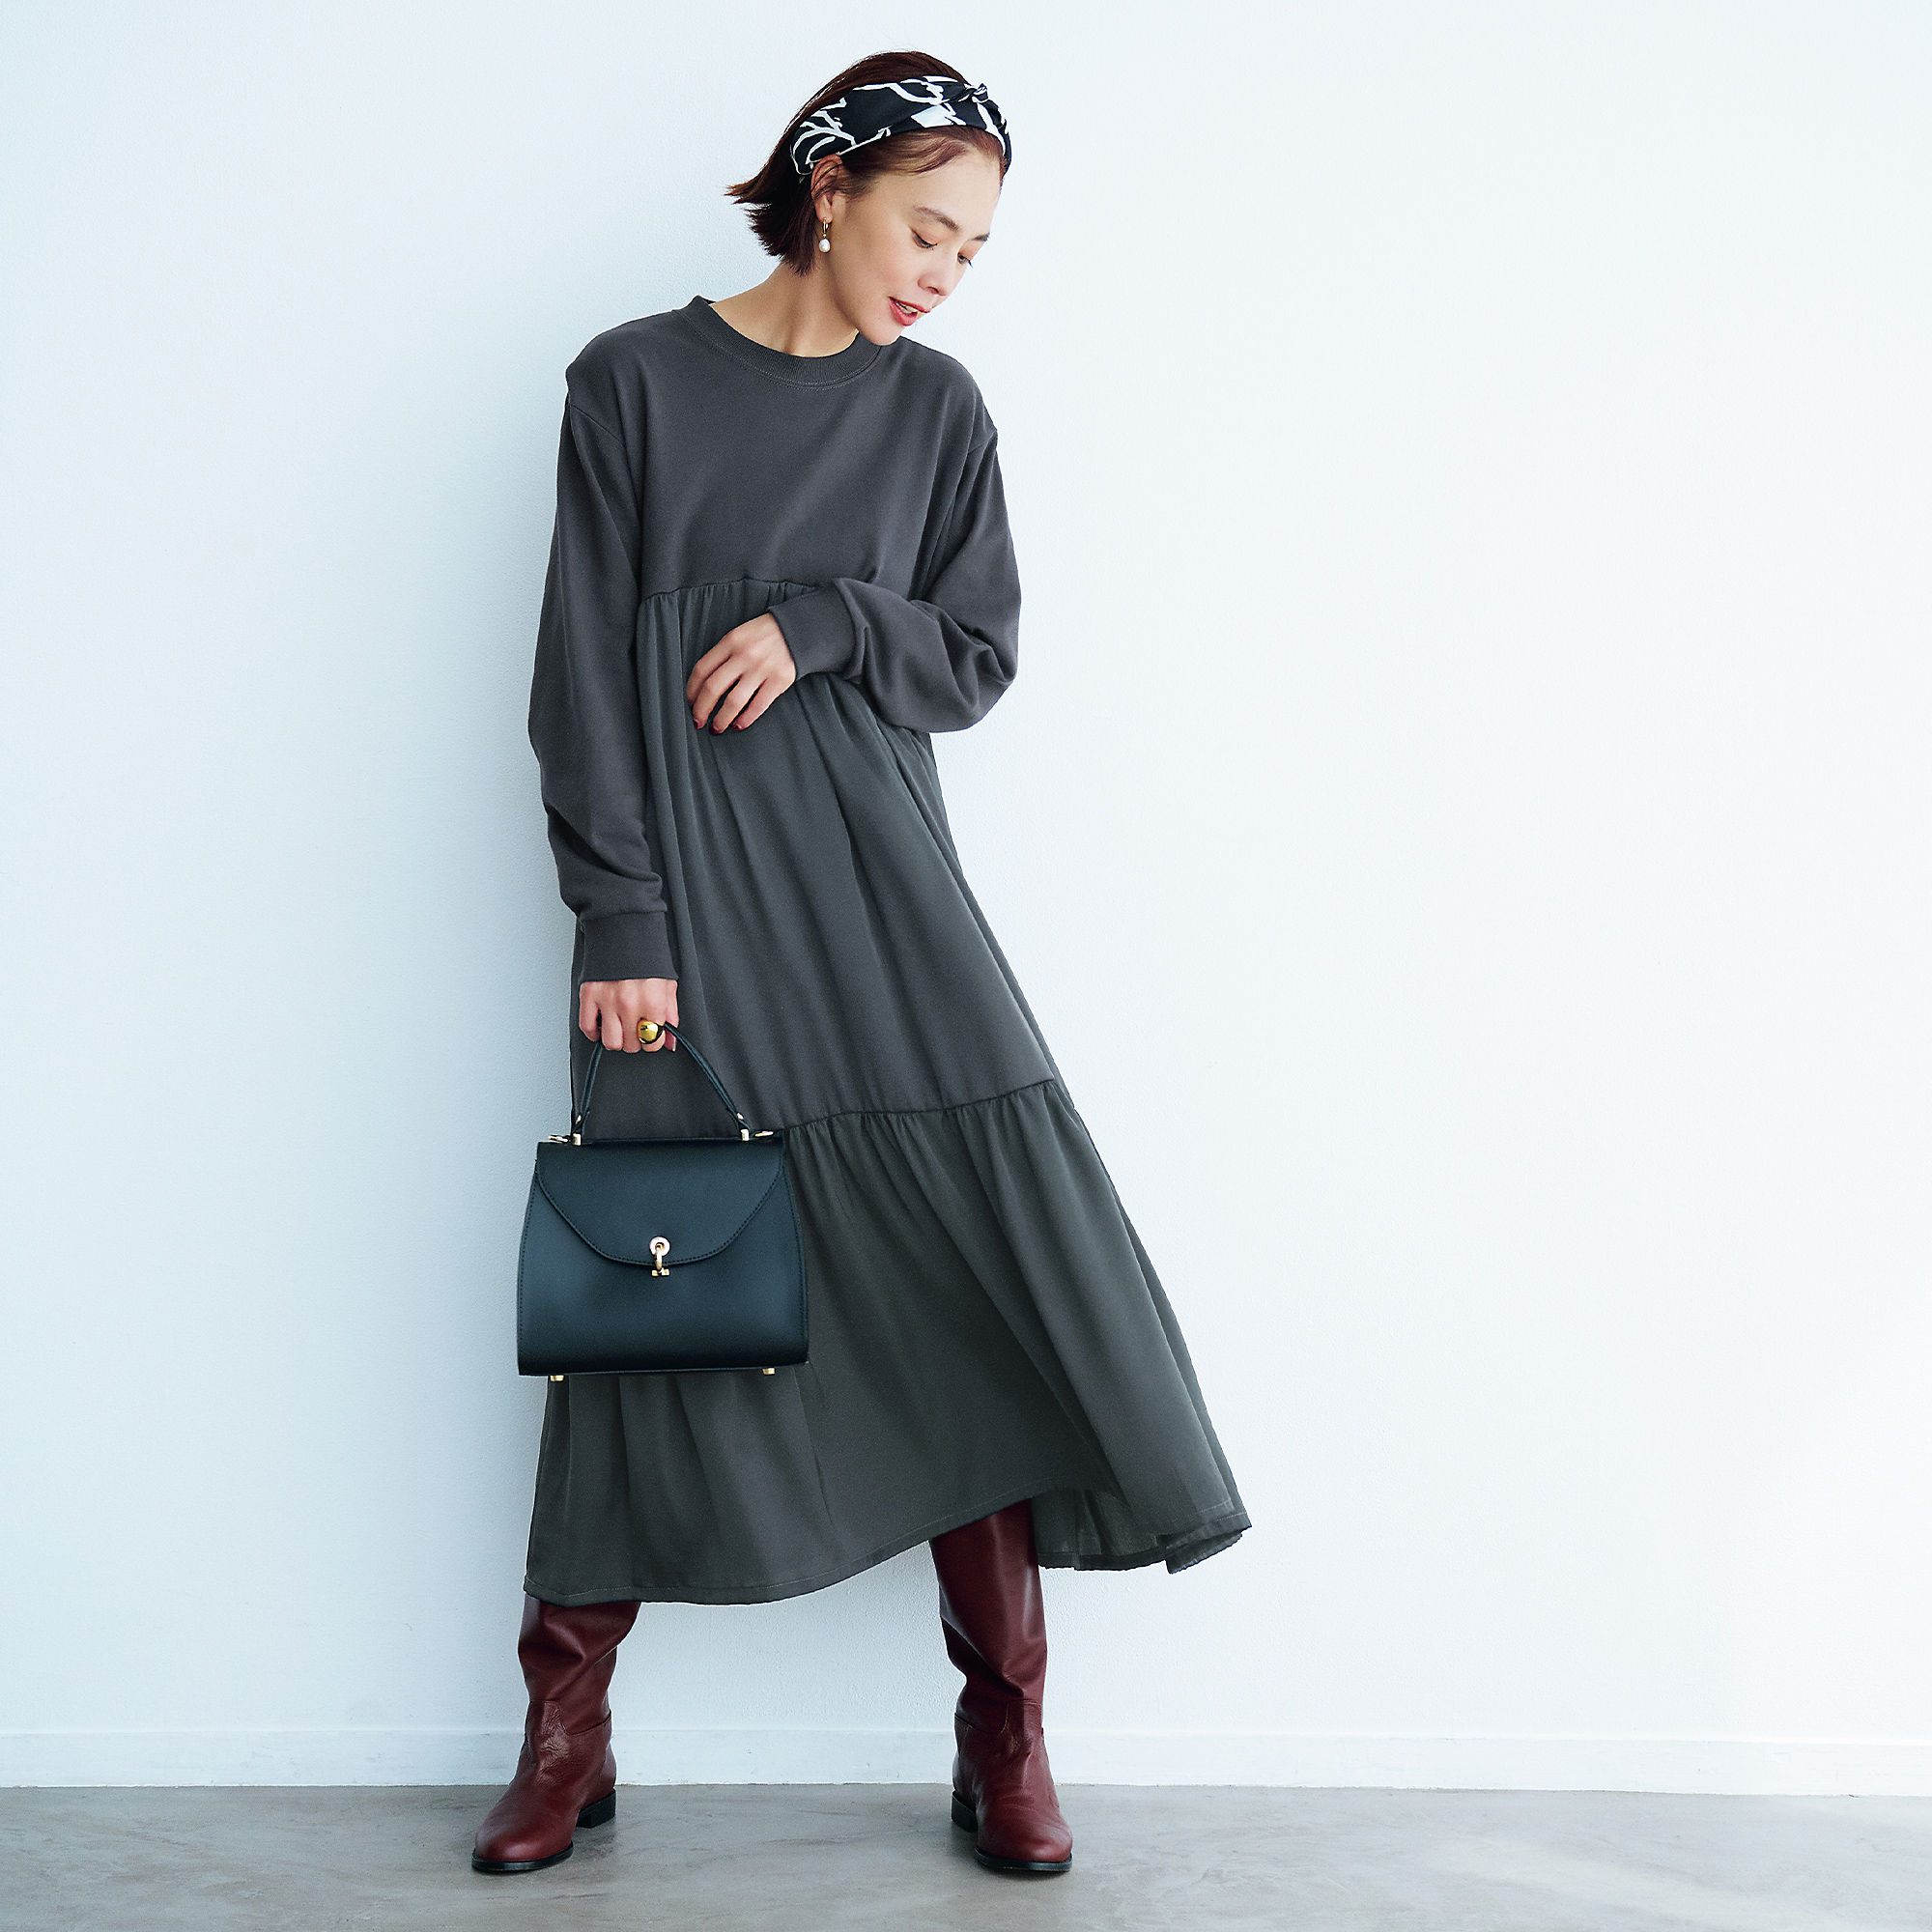 「12closet」秋冬のヒットアイテムTOP10【40代ファッション】